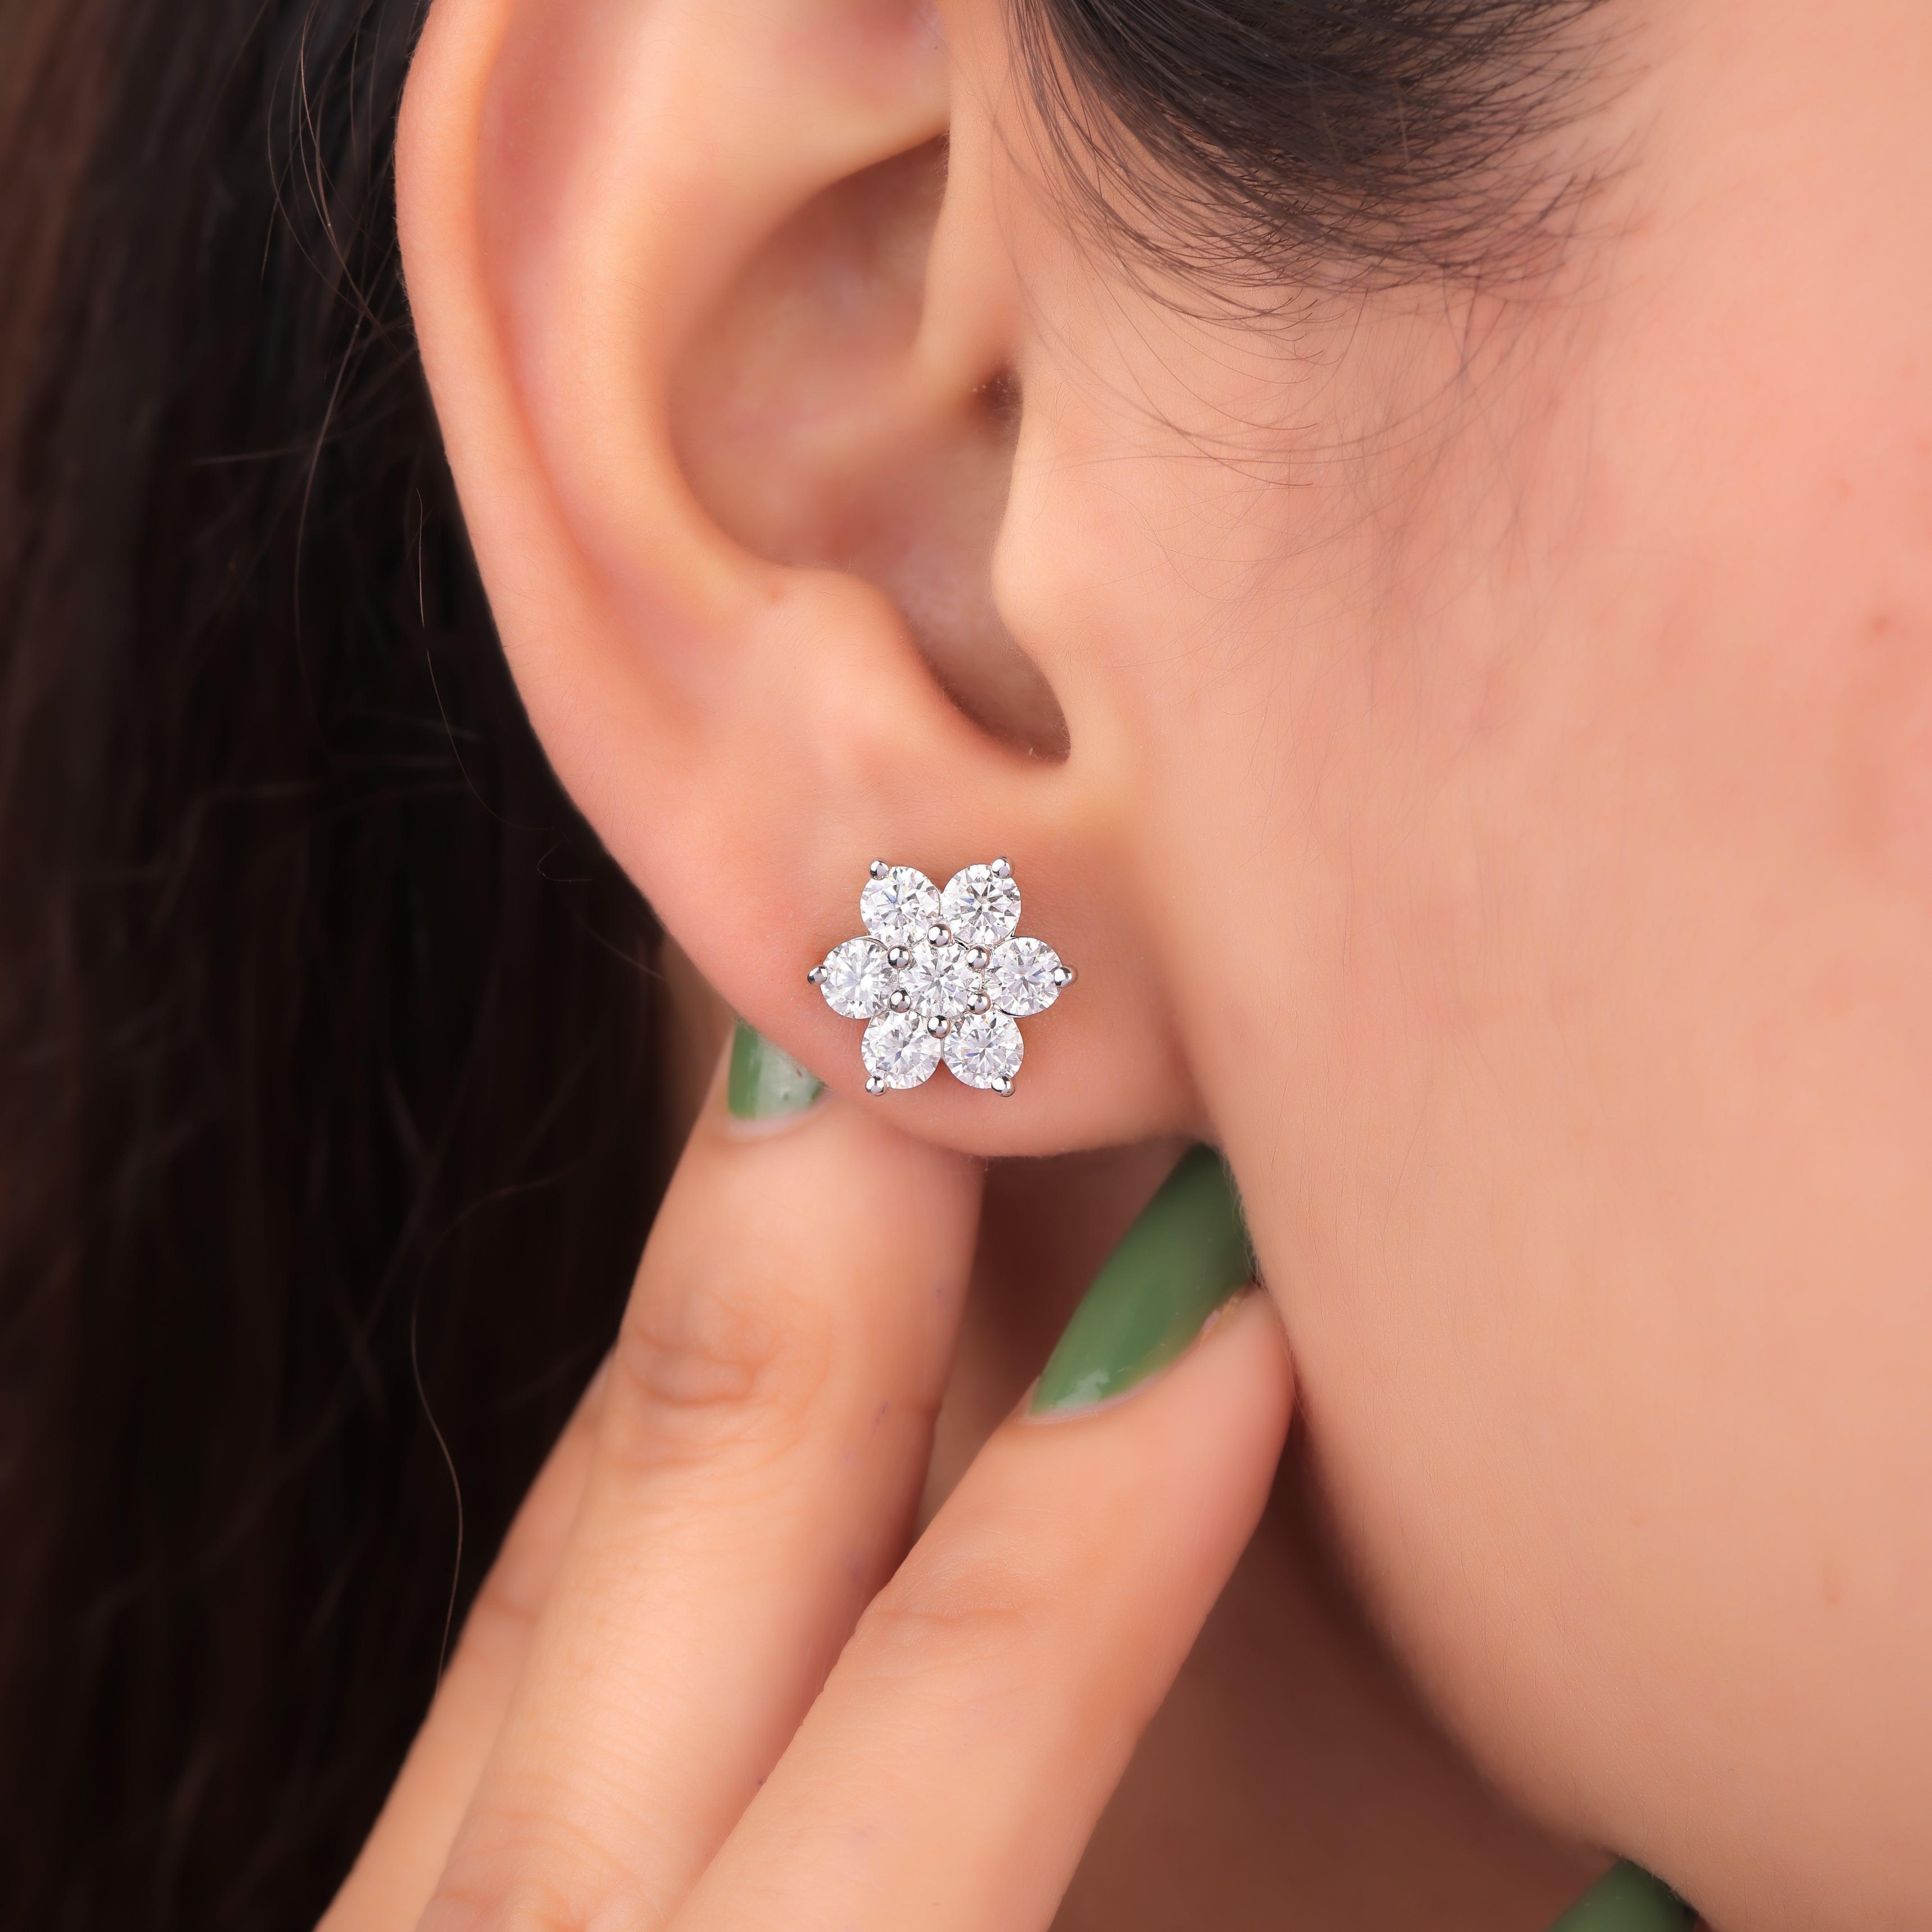 Iqra Silver Stud Earrings for Women - Shinez By Baxi Jewellers